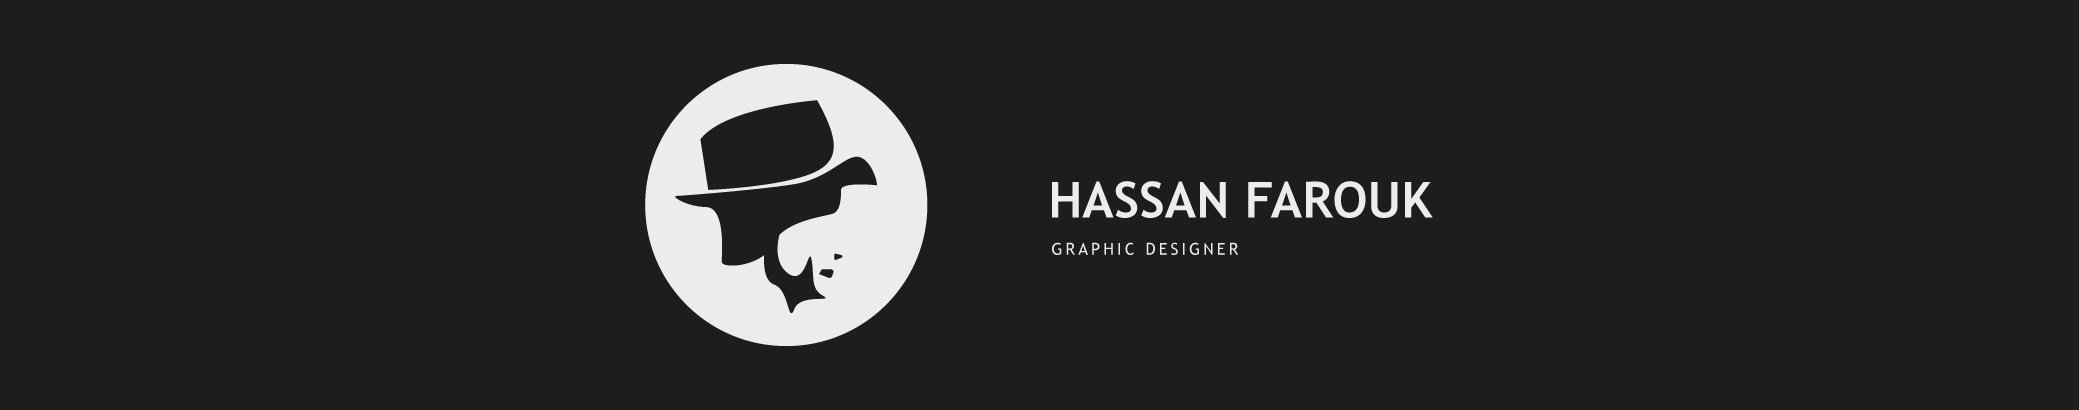 Hassan Farouk profil başlığı